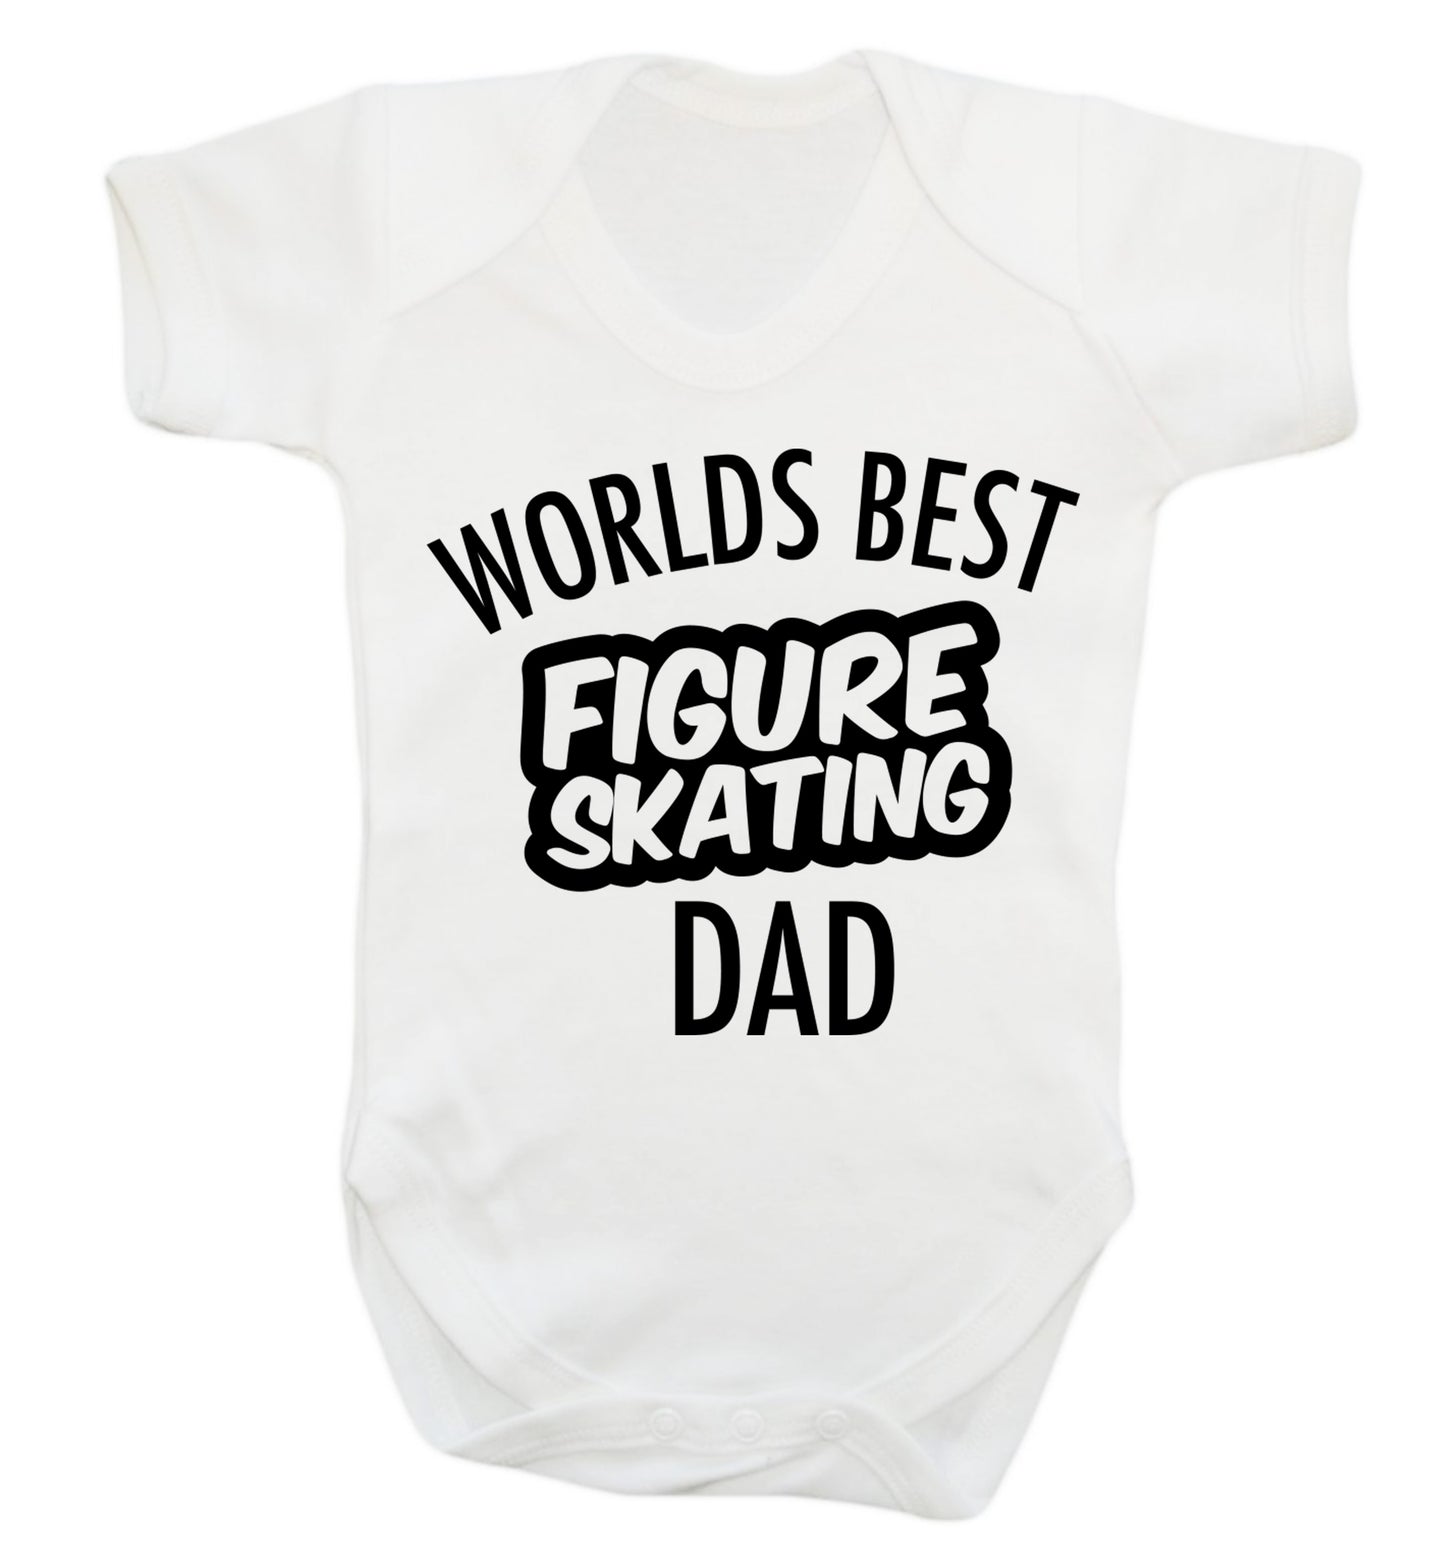 Worlds best figure skating dad Baby Vest white 18-24 months